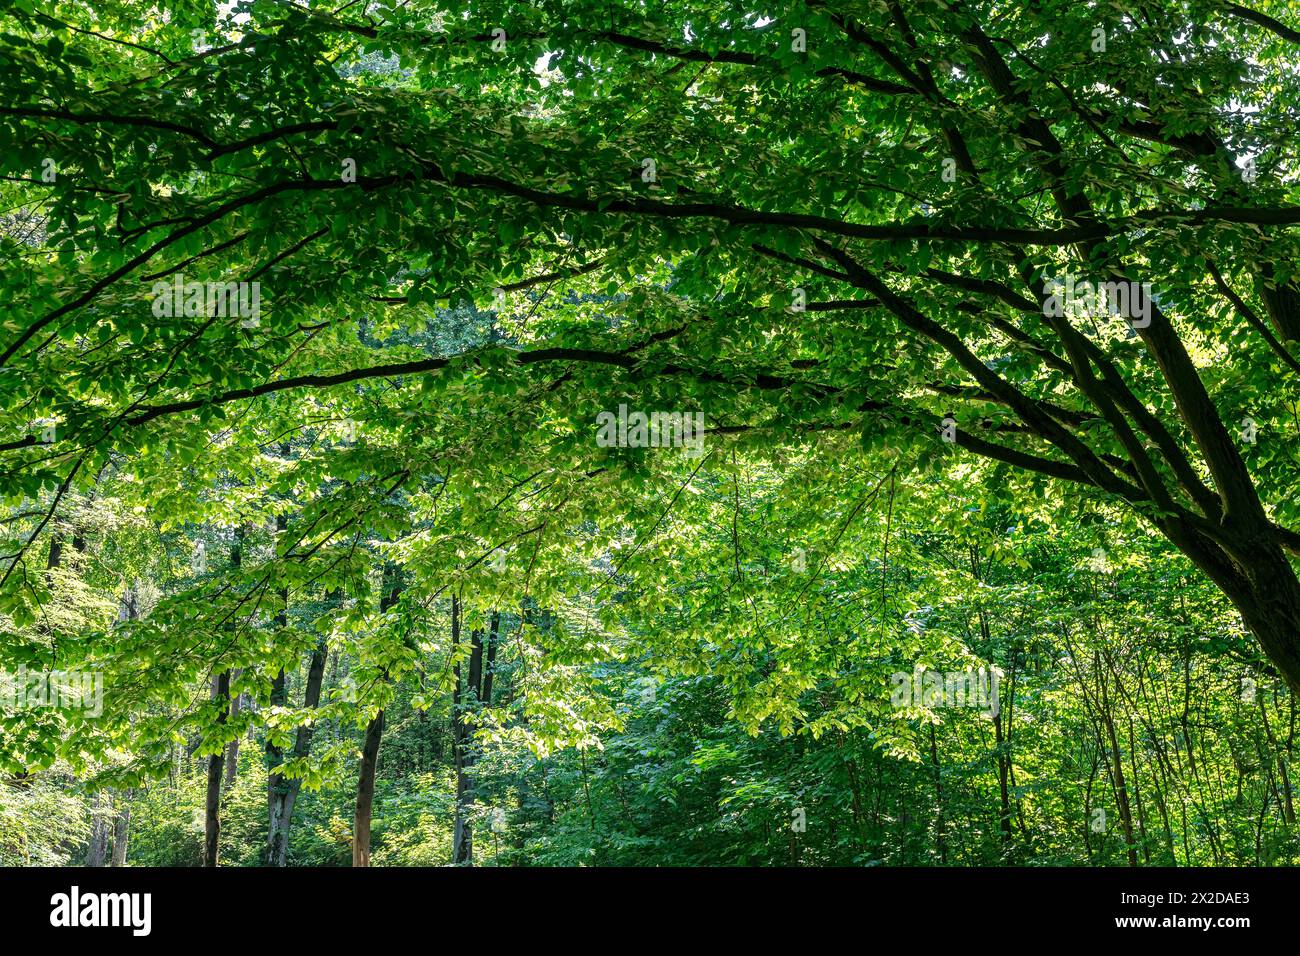 Pfad in einem Wald mit bogenförmigen Ästen eines majestätischen grünen Baumes. Wunderschöne Sommerpark-Idylle. Stockfoto